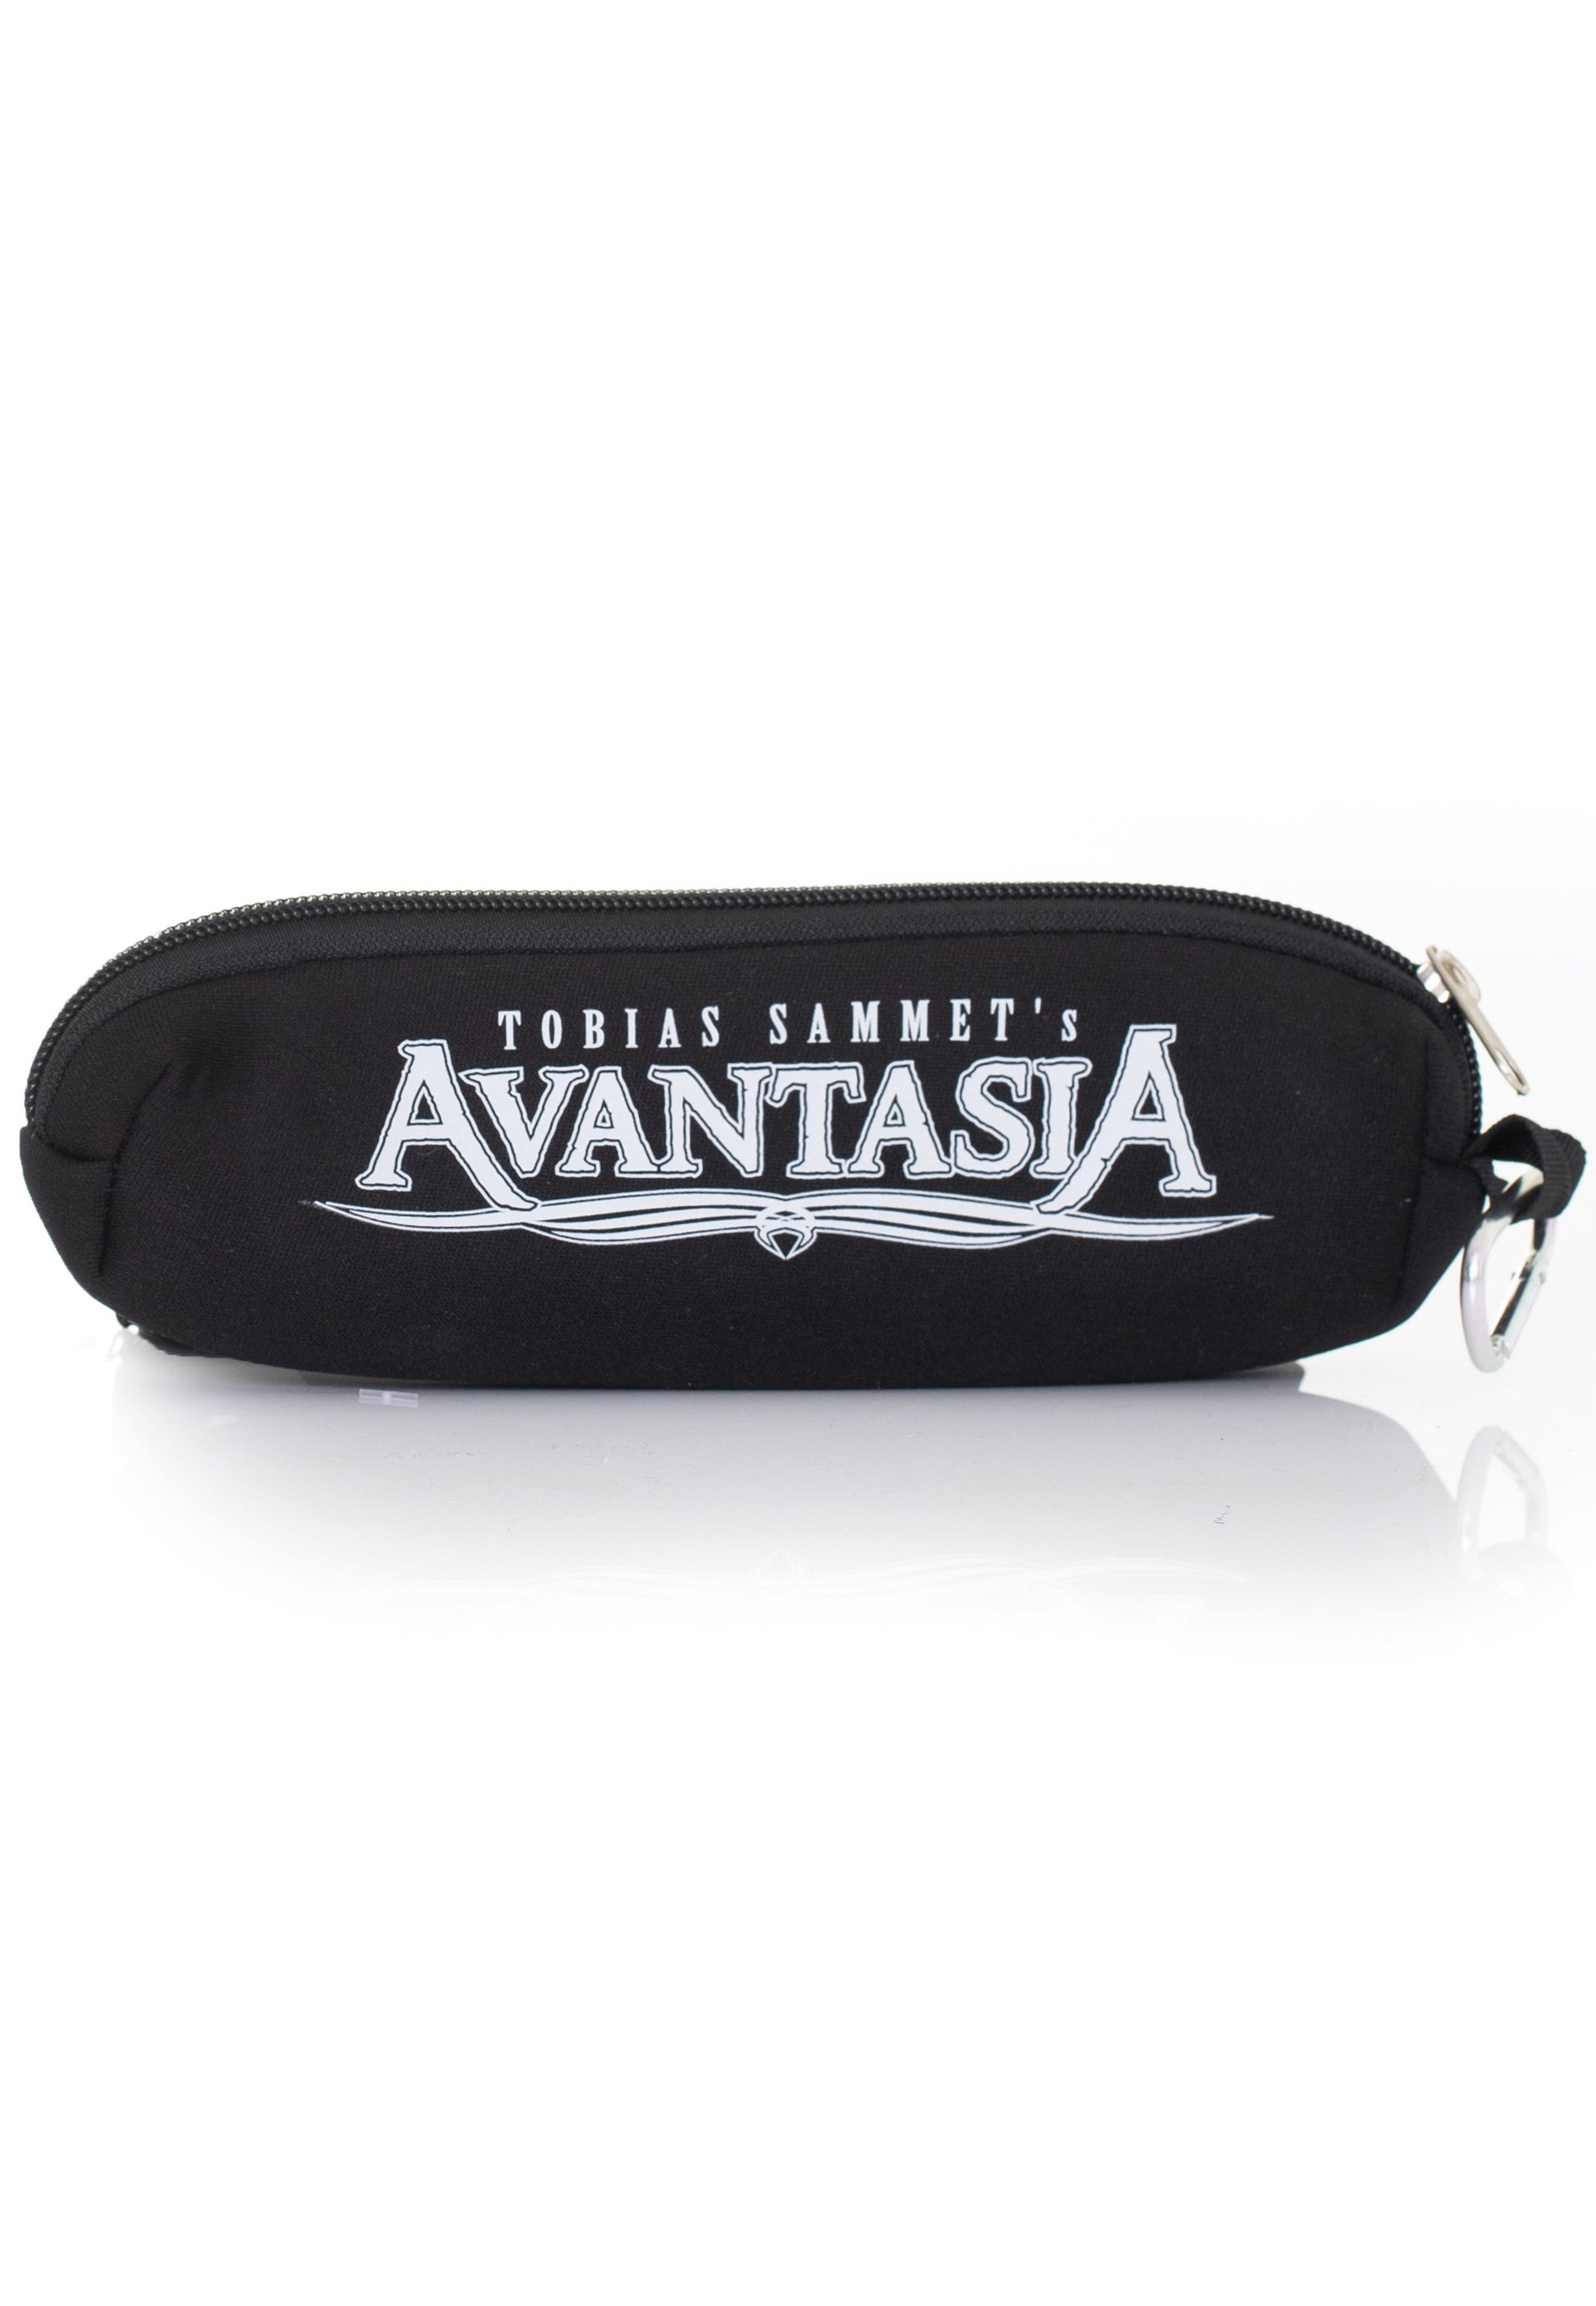 Avantasia - Logo - Pencil Case